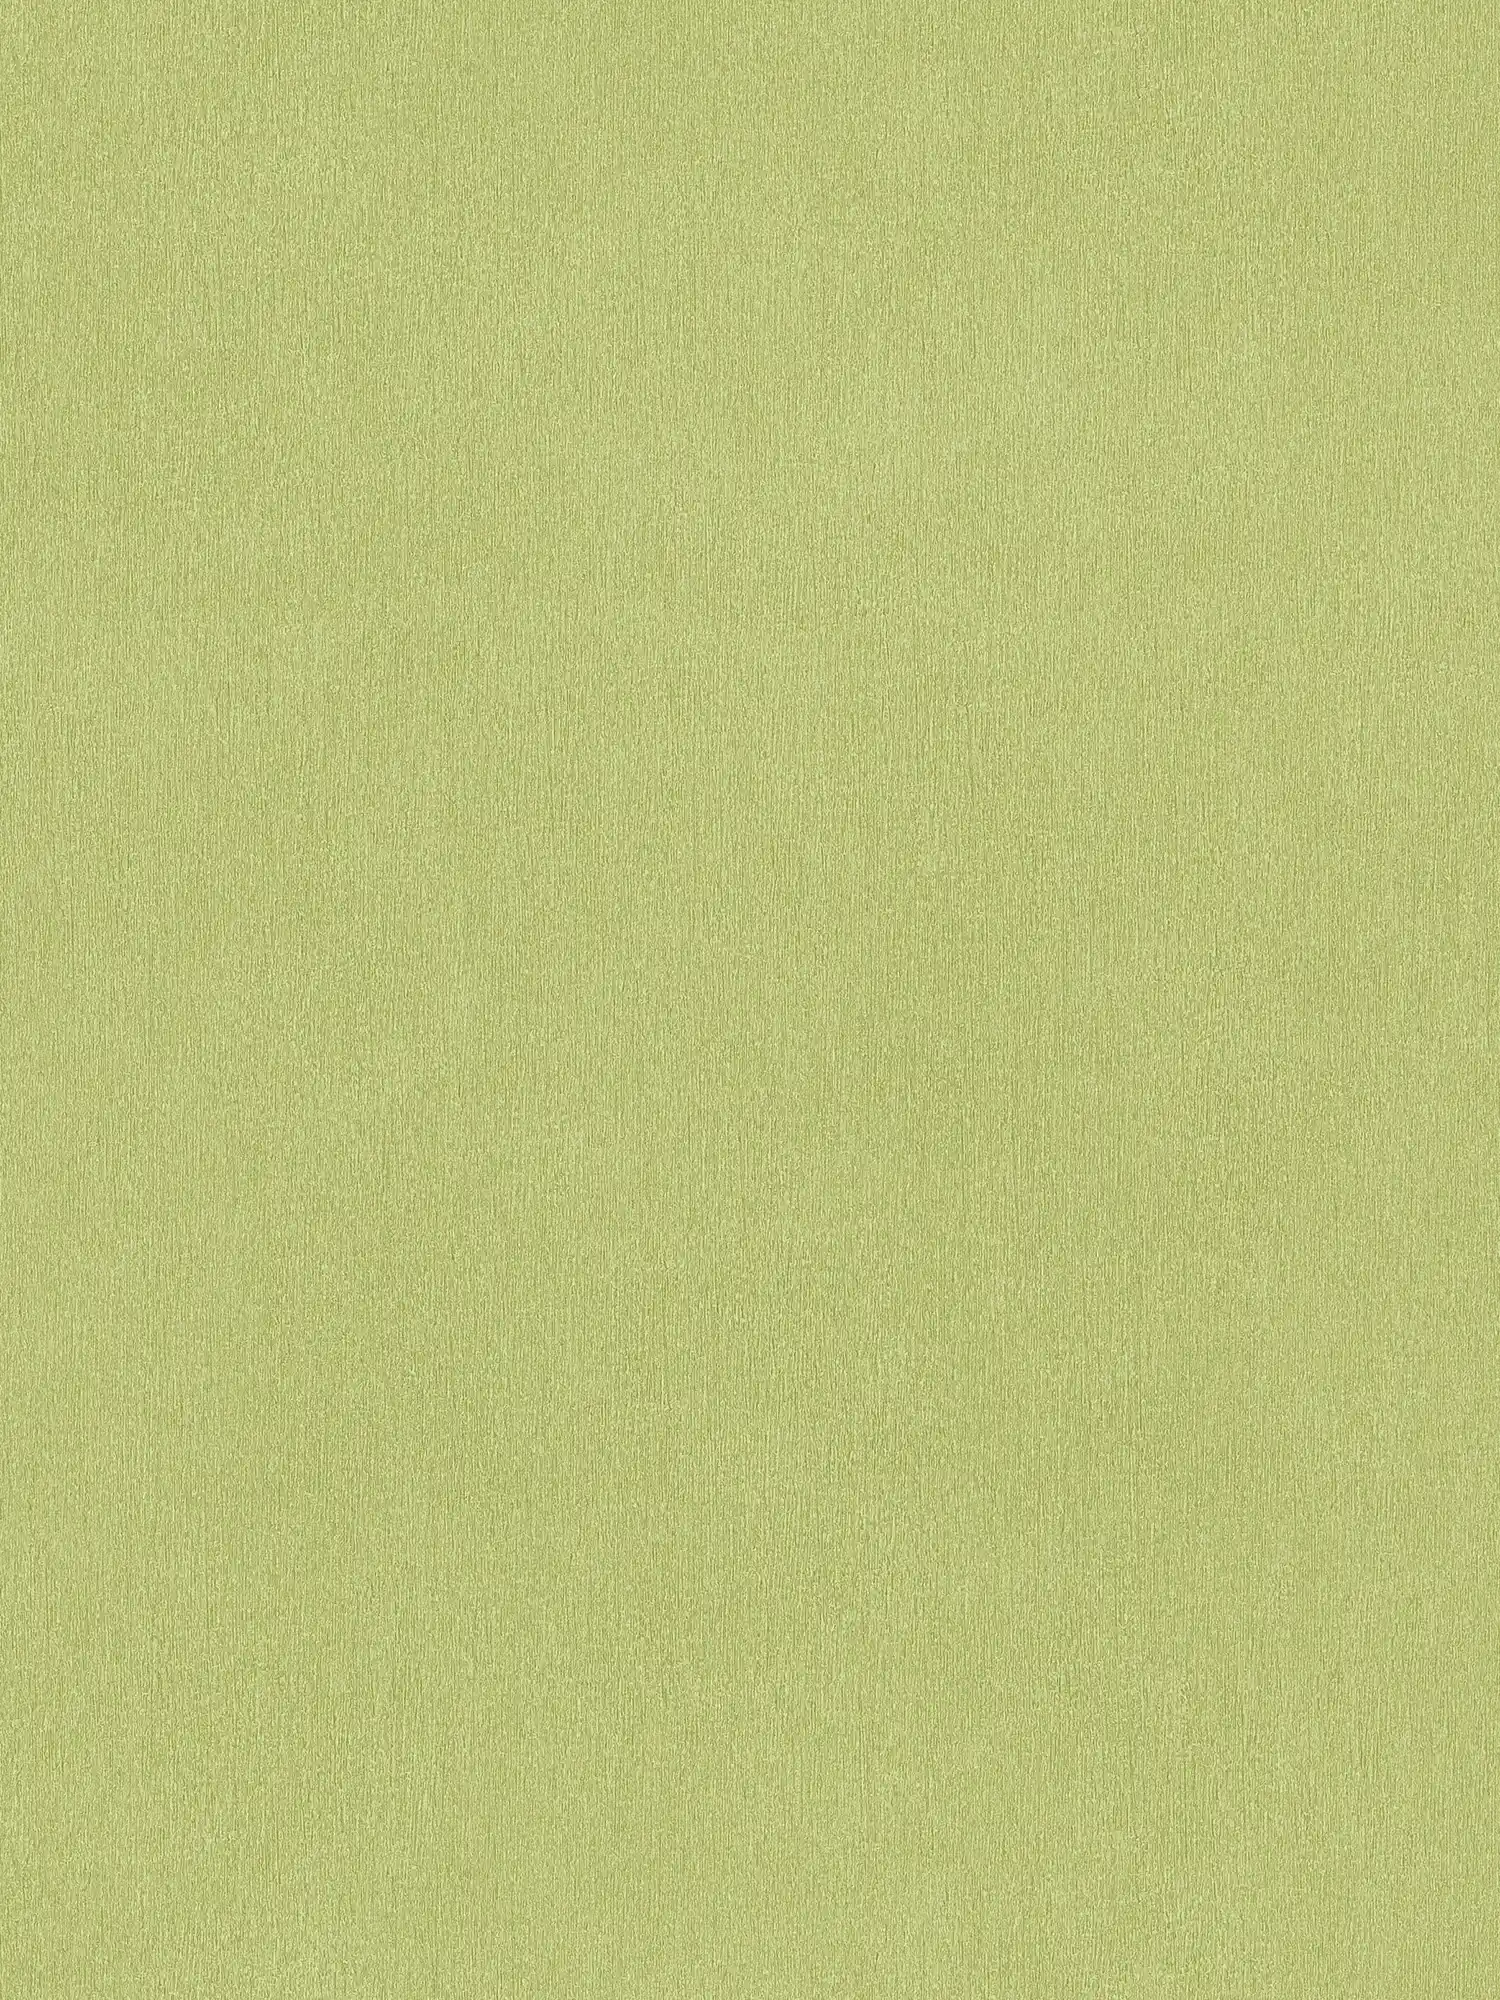 Papier peint vert clair uni vert citron avec hachures de couleur
